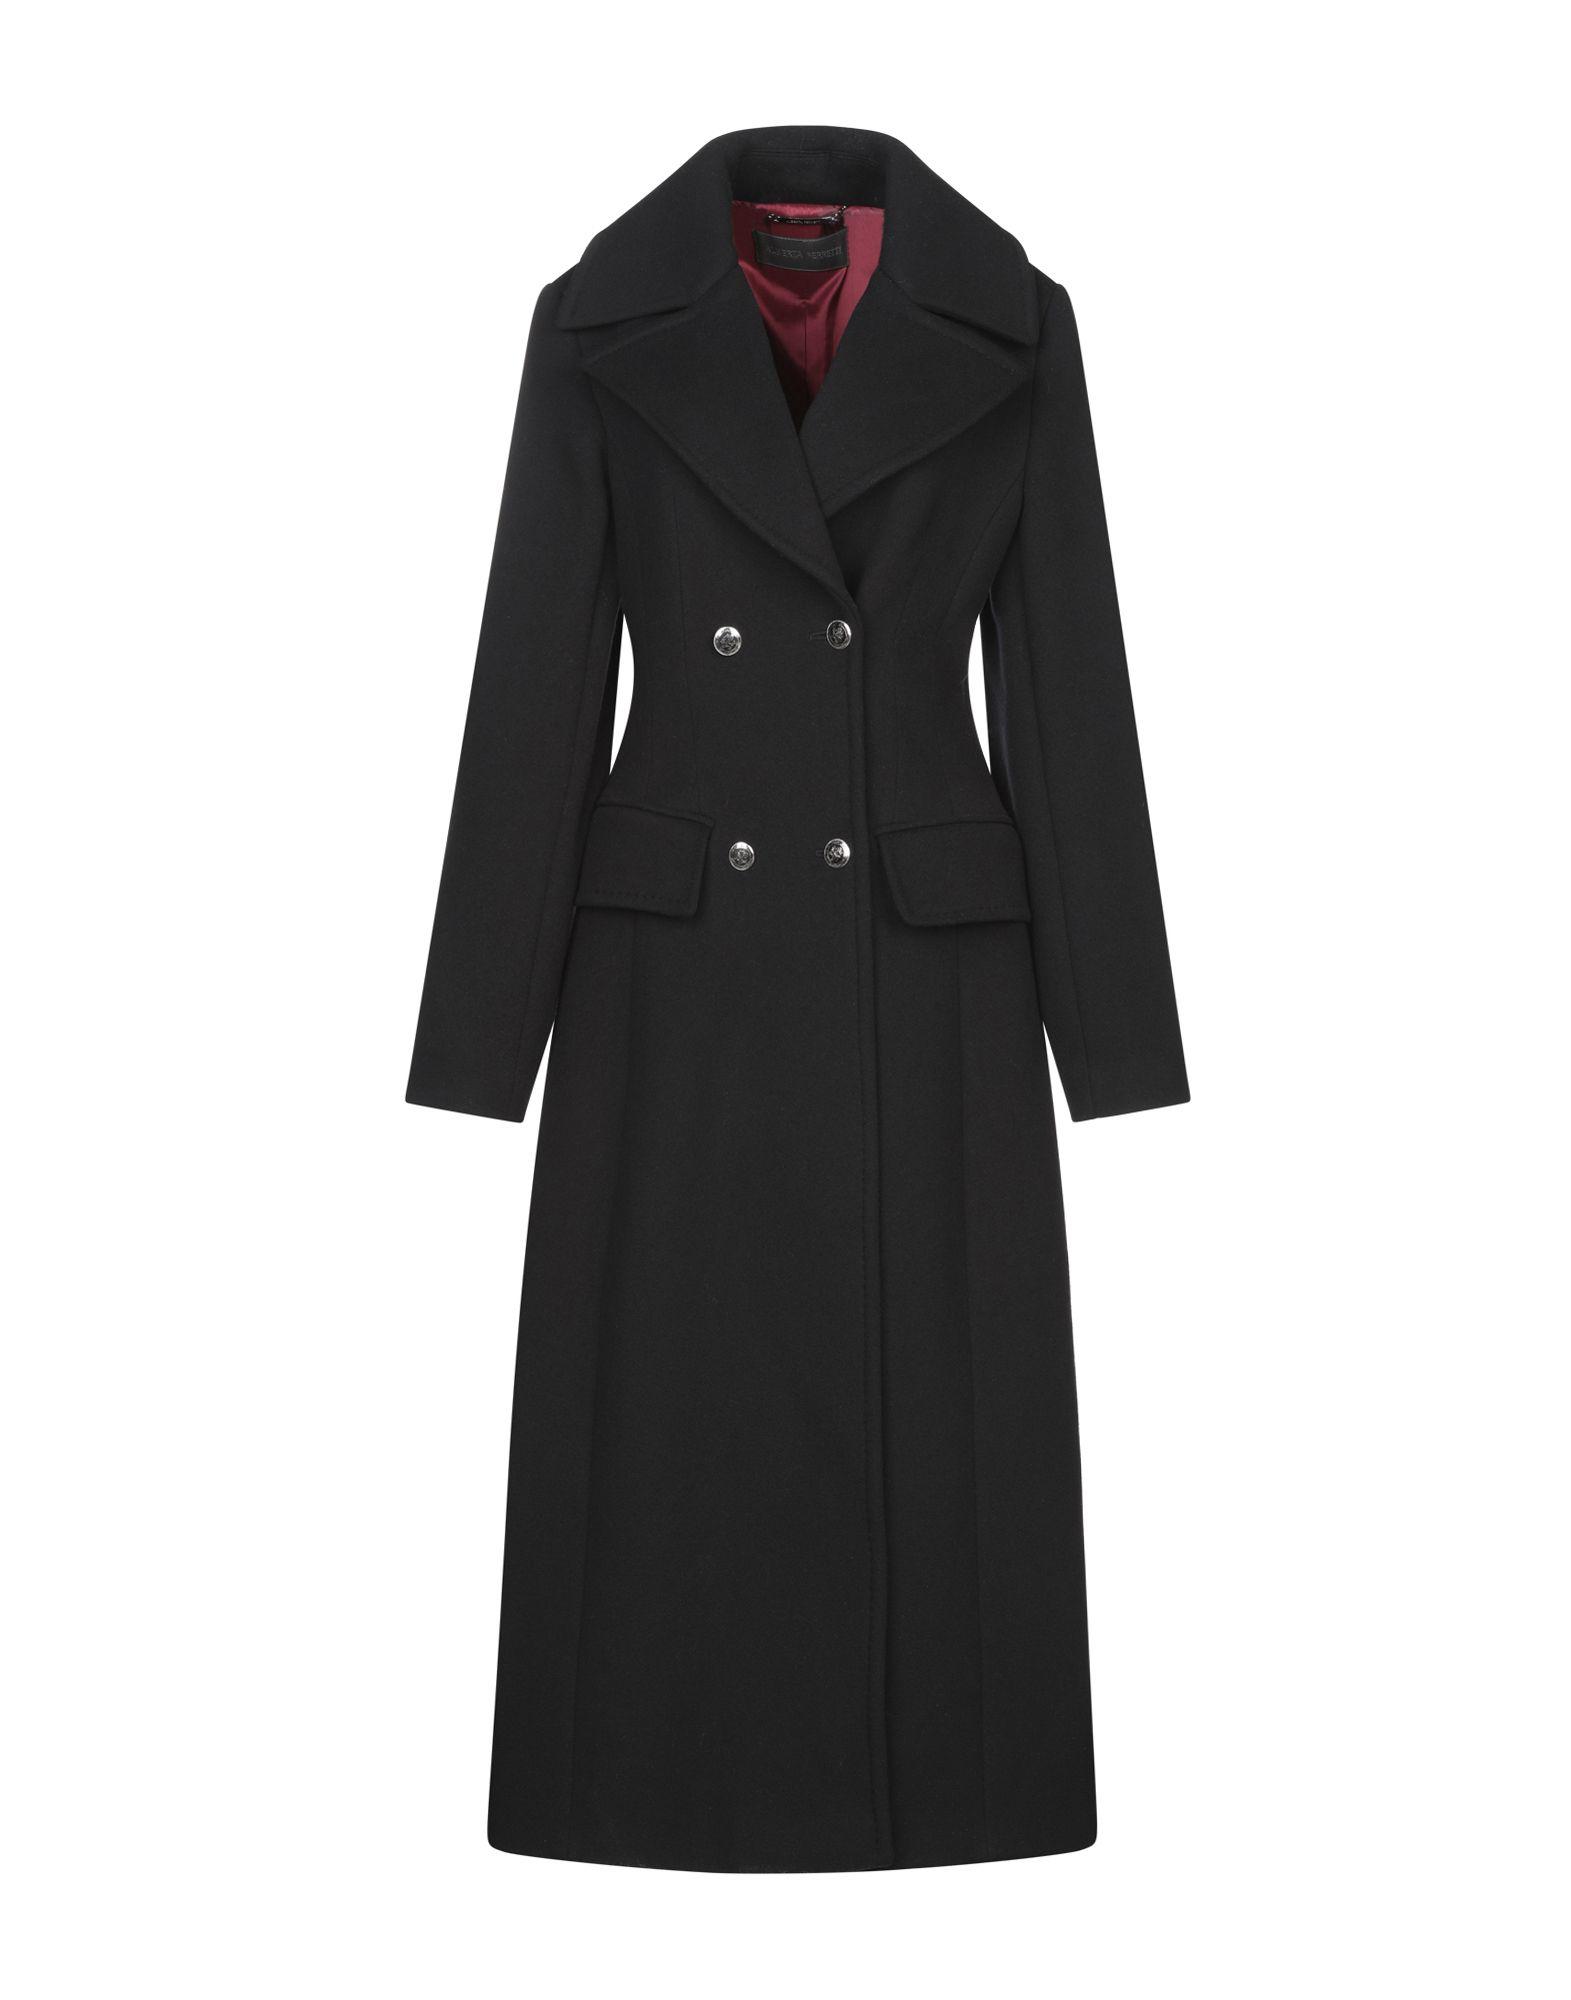 Alberta Ferretti Wool Coat in Black - Lyst